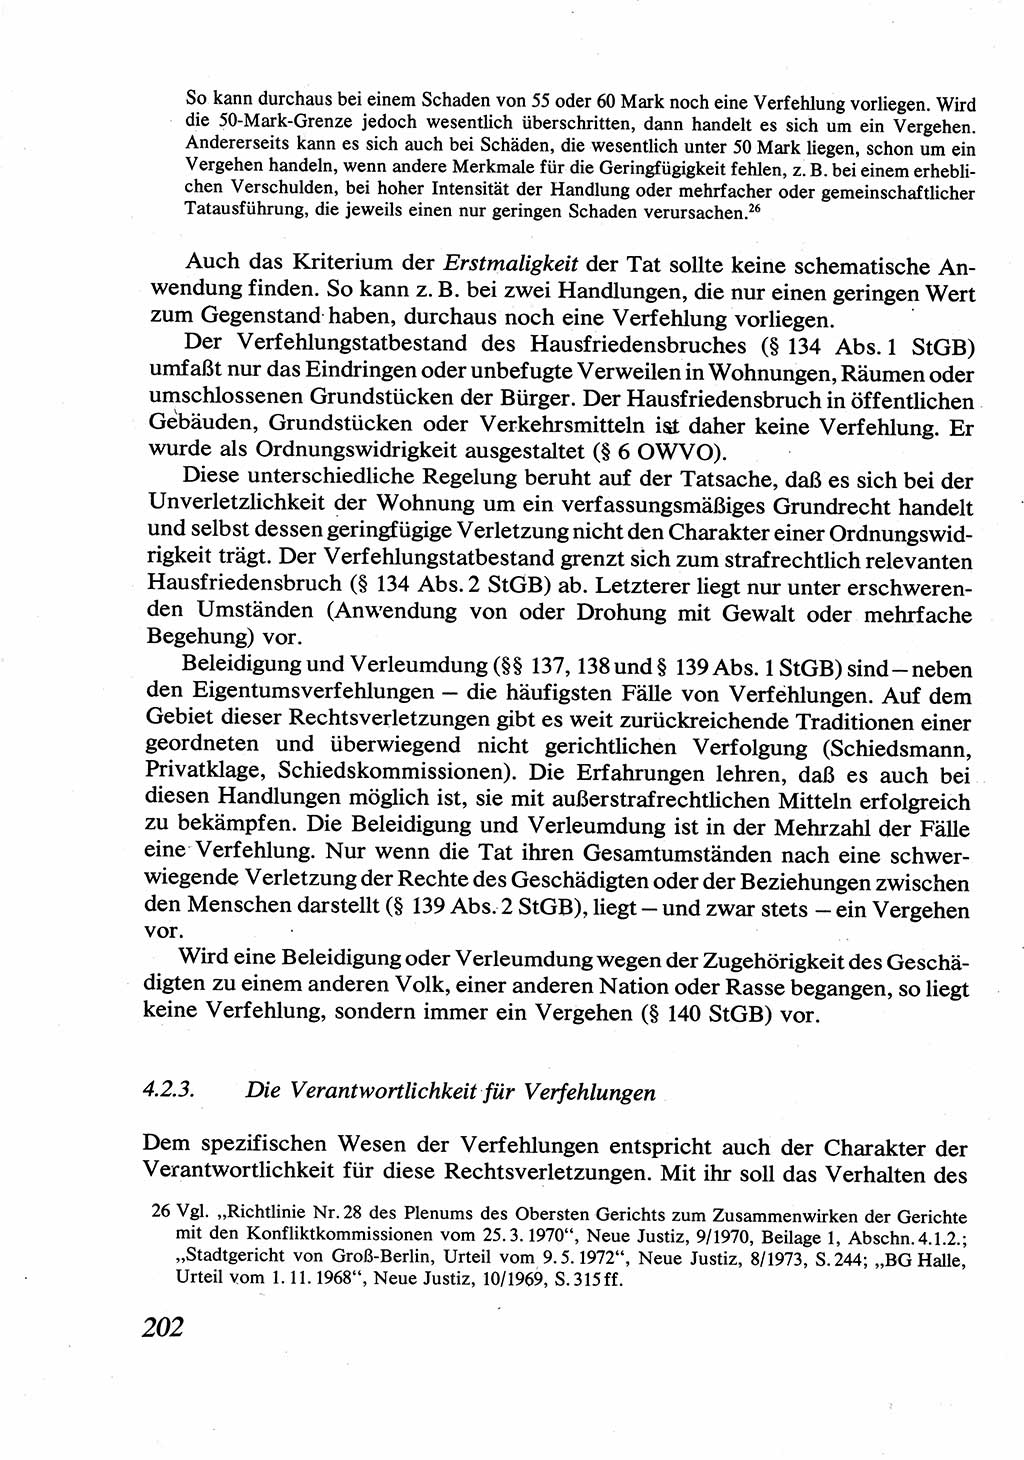 Strafrecht [Deutsche Demokratische Republik (DDR)], Allgemeiner Teil, Lehrbuch 1976, Seite 202 (Strafr. DDR AT Lb. 1976, S. 202)